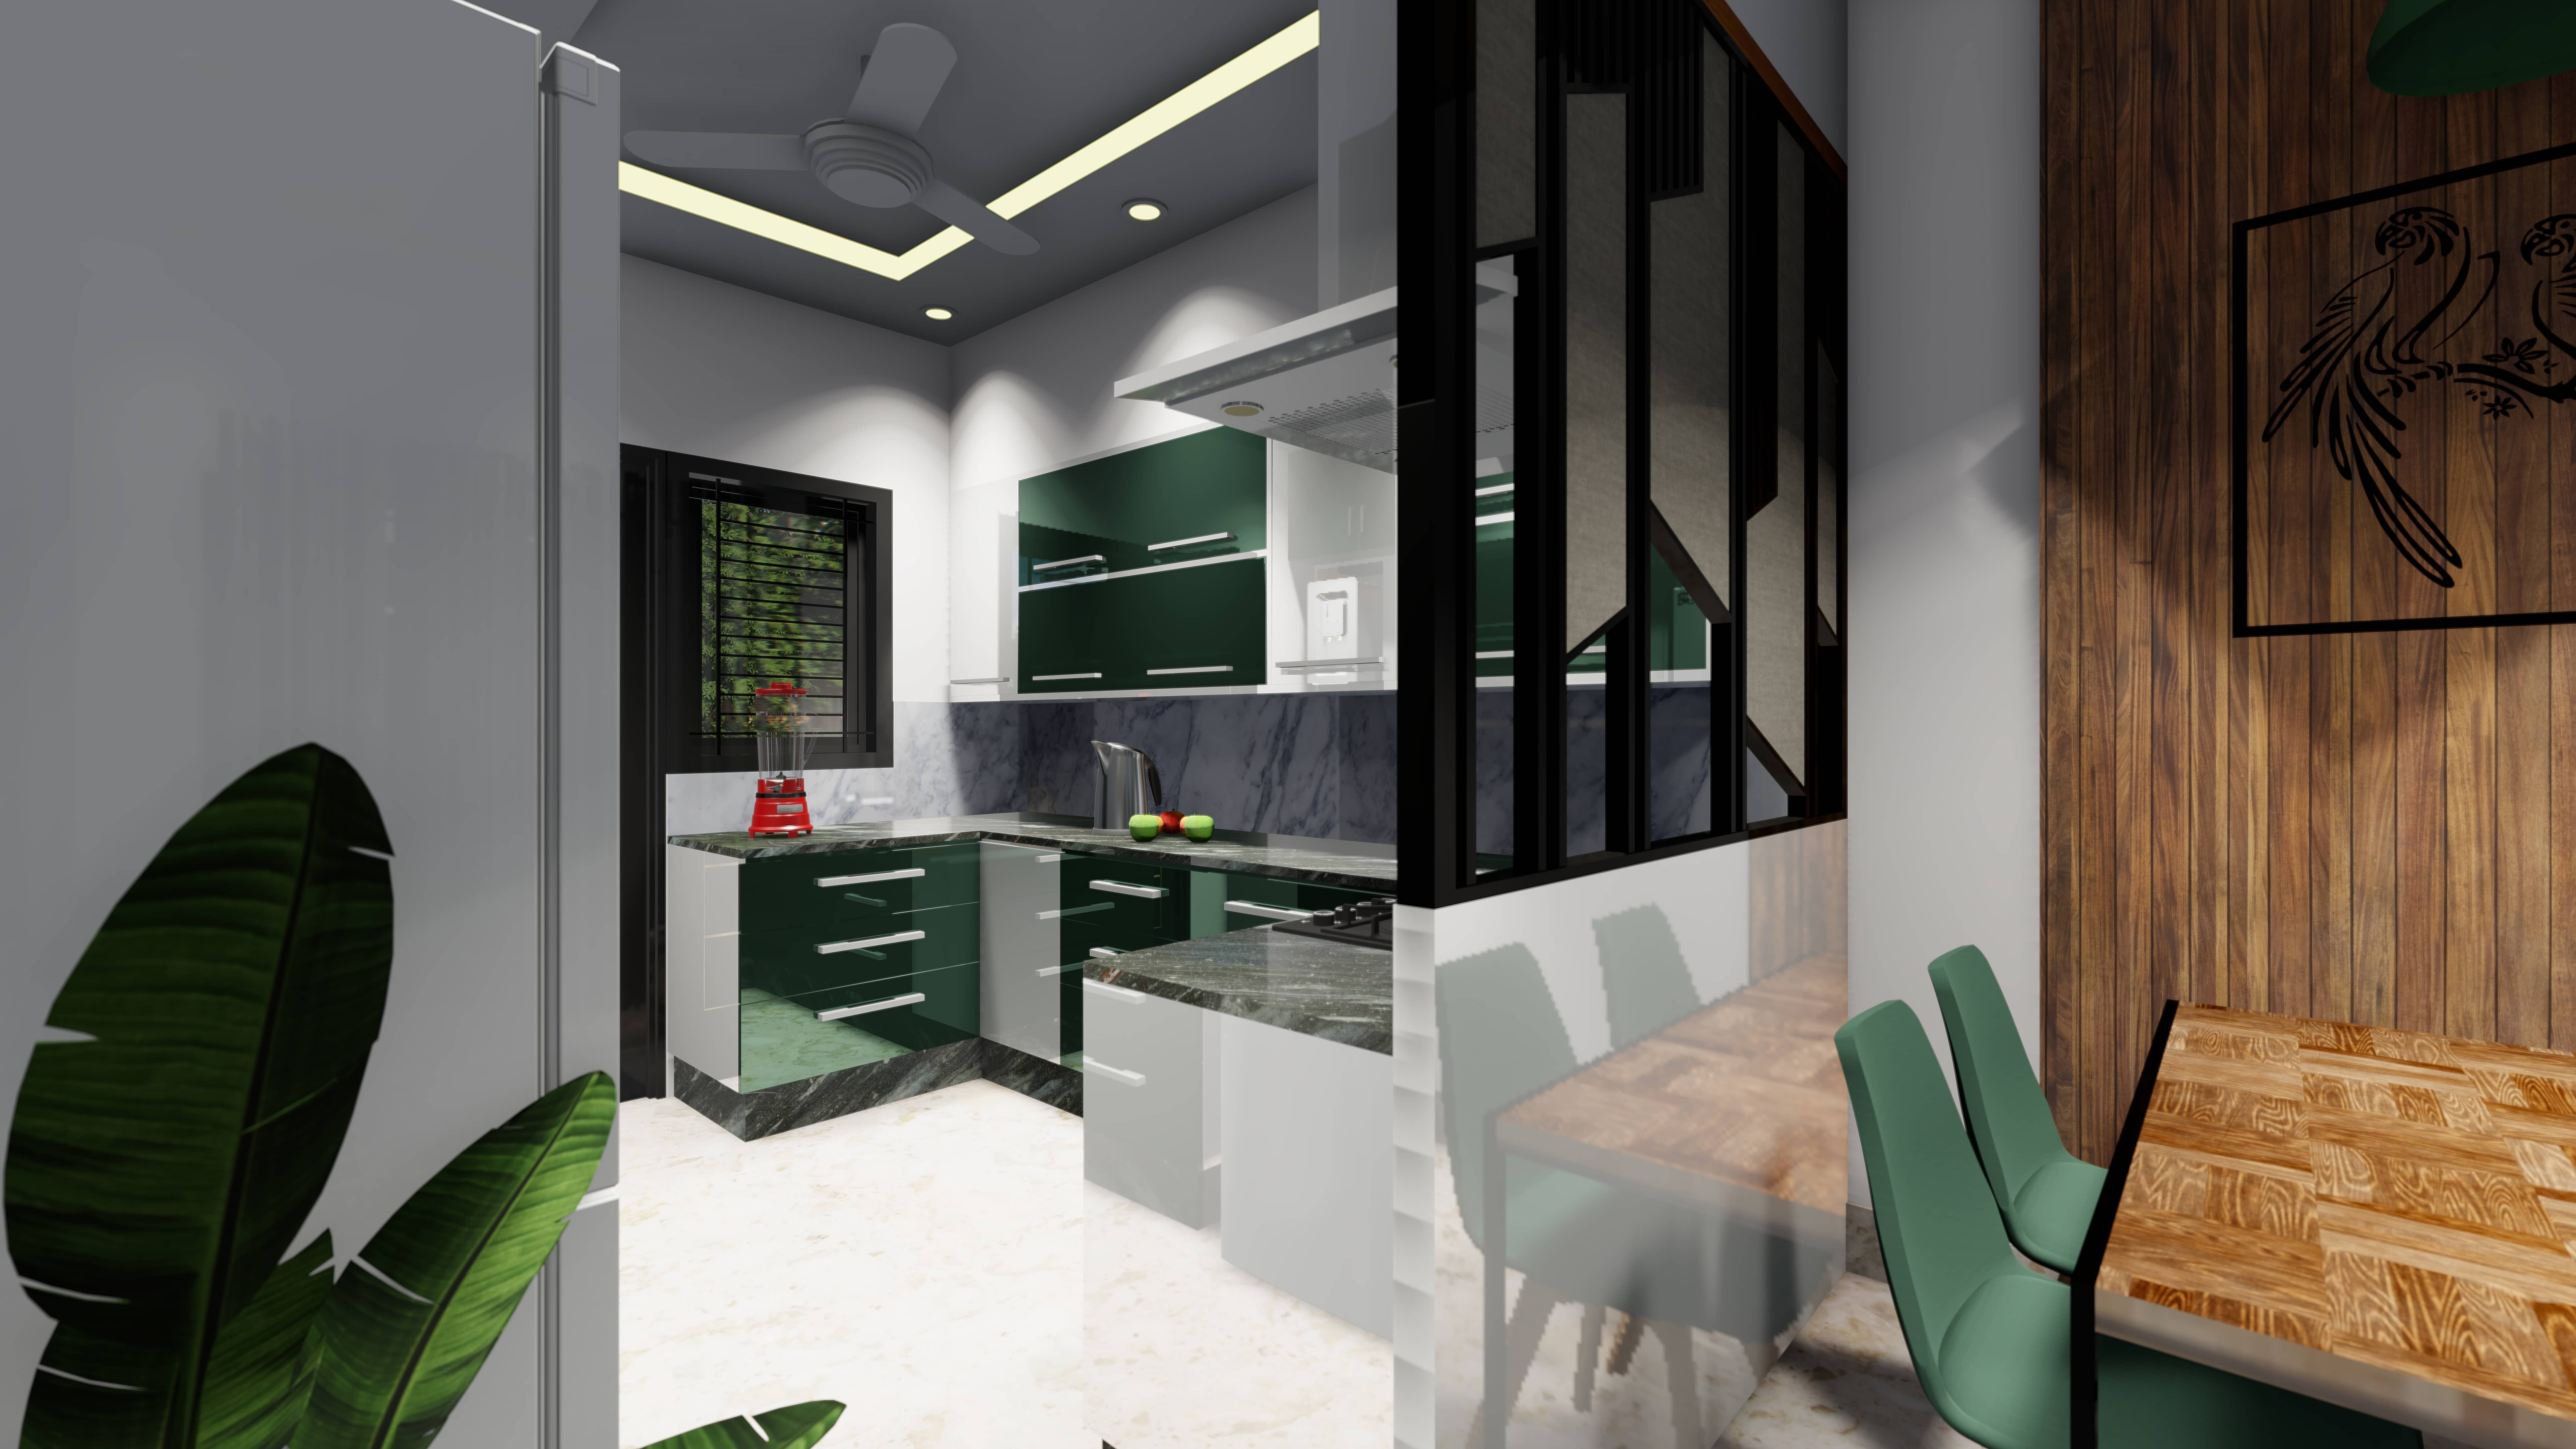 Eligant modular kitchen designs